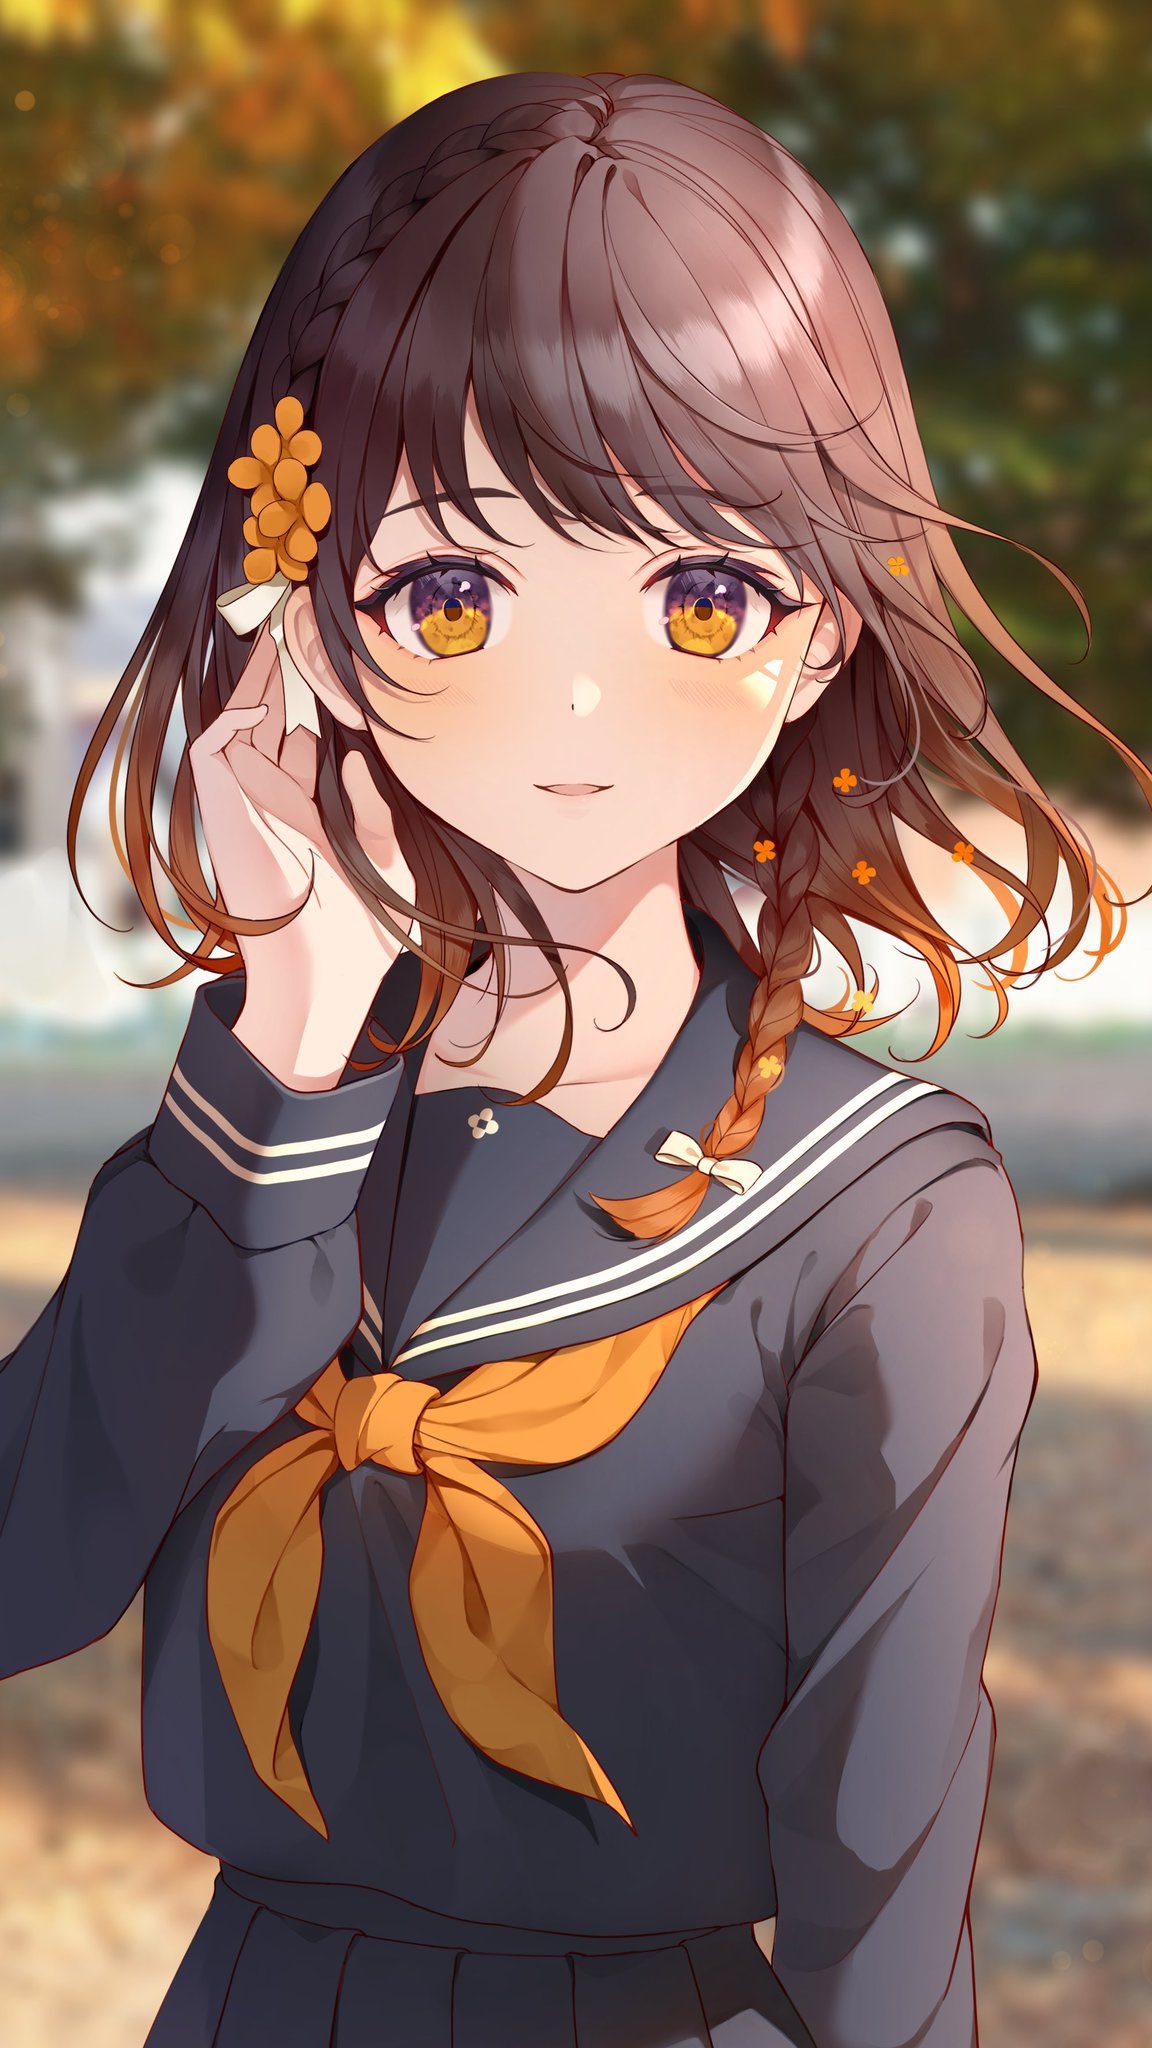 Anime 1152x2048 anime anime girls school uniform schoolgirl yellow eyes flower in hair brunette